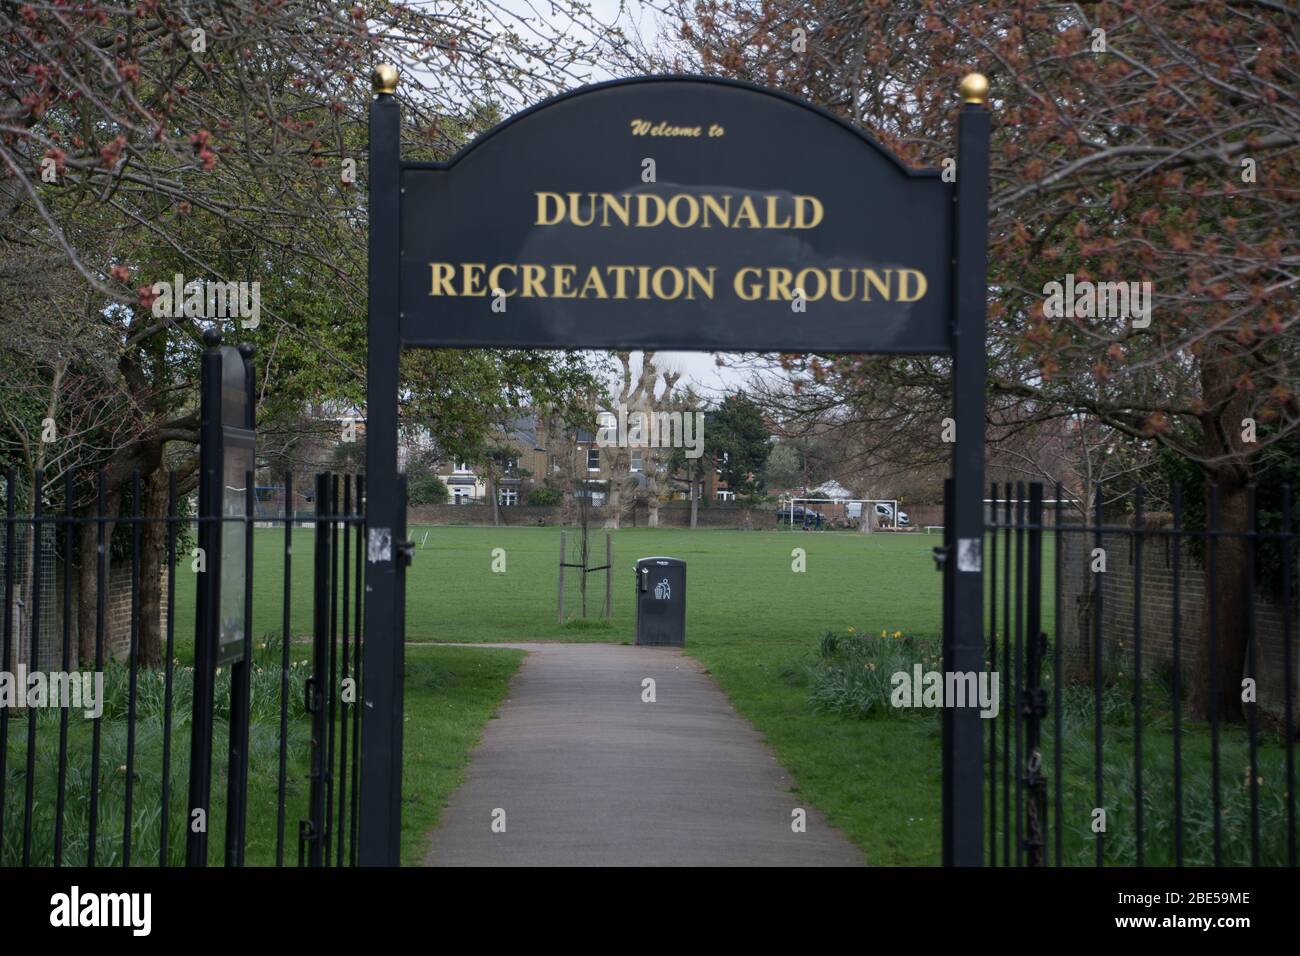 Dundonald Recreation Ground, Wimbledon, London- UK Stock Photo